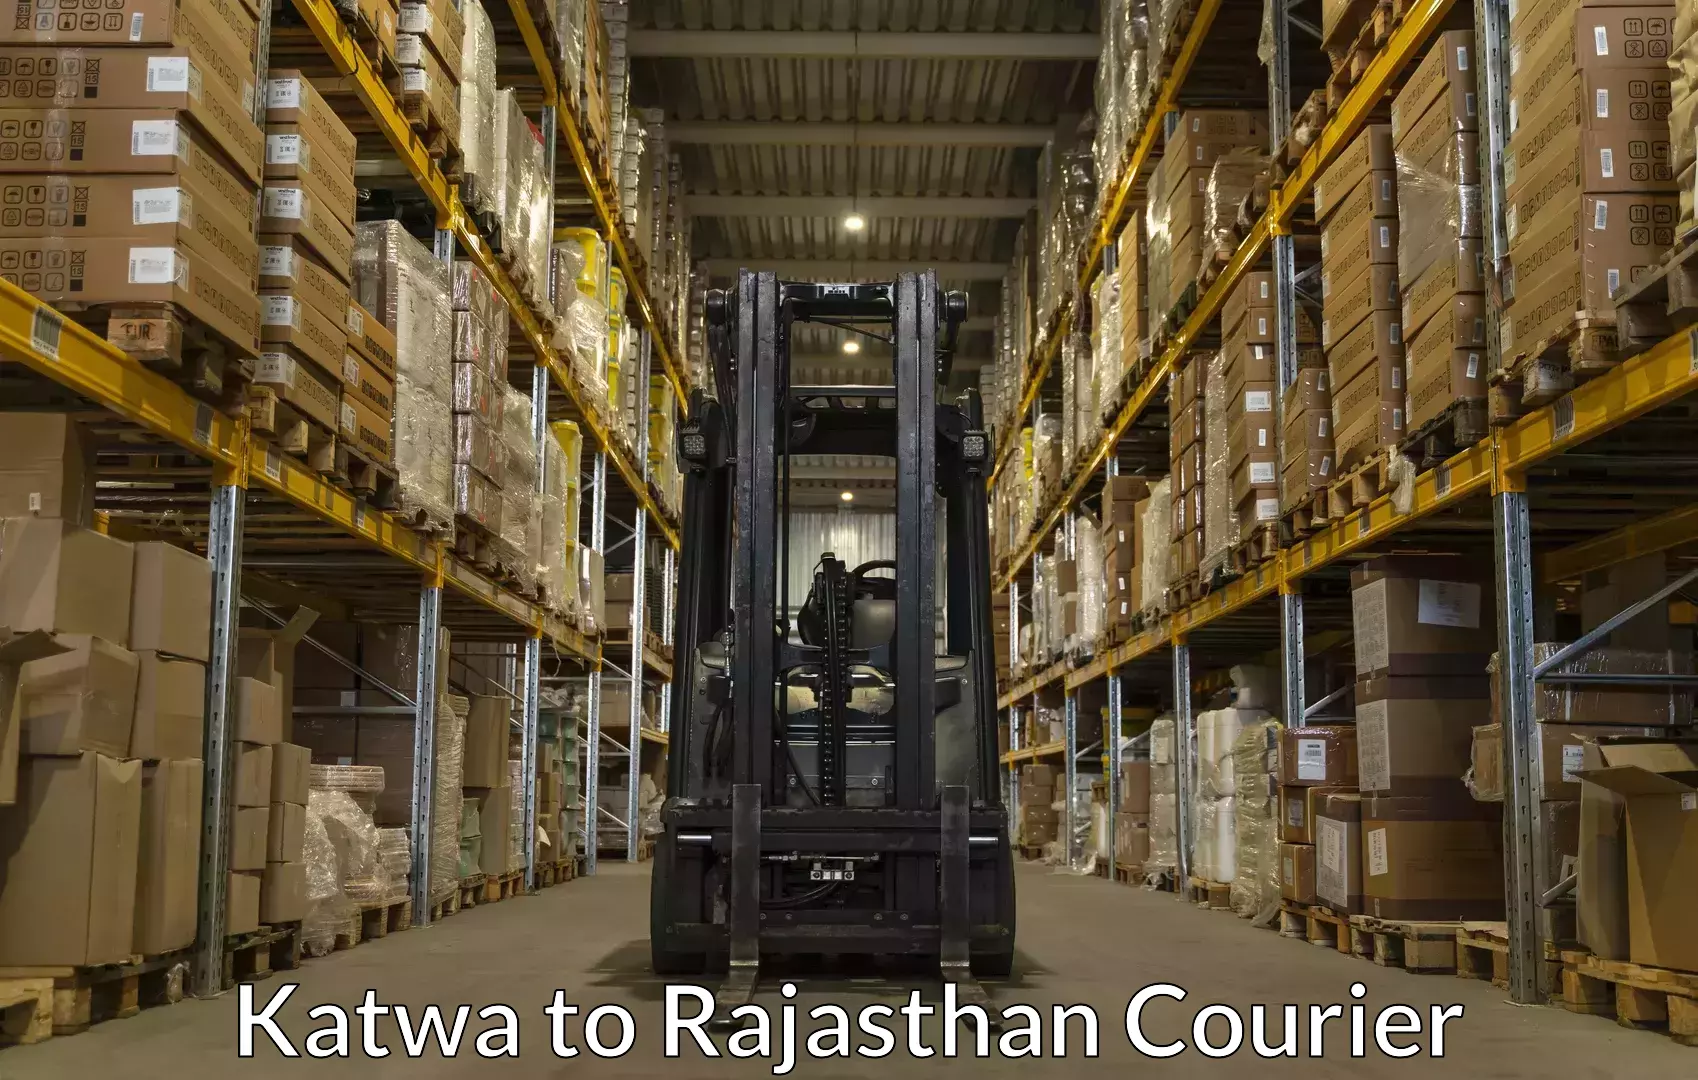 Luggage transport company Katwa to Shahpura Jaipur